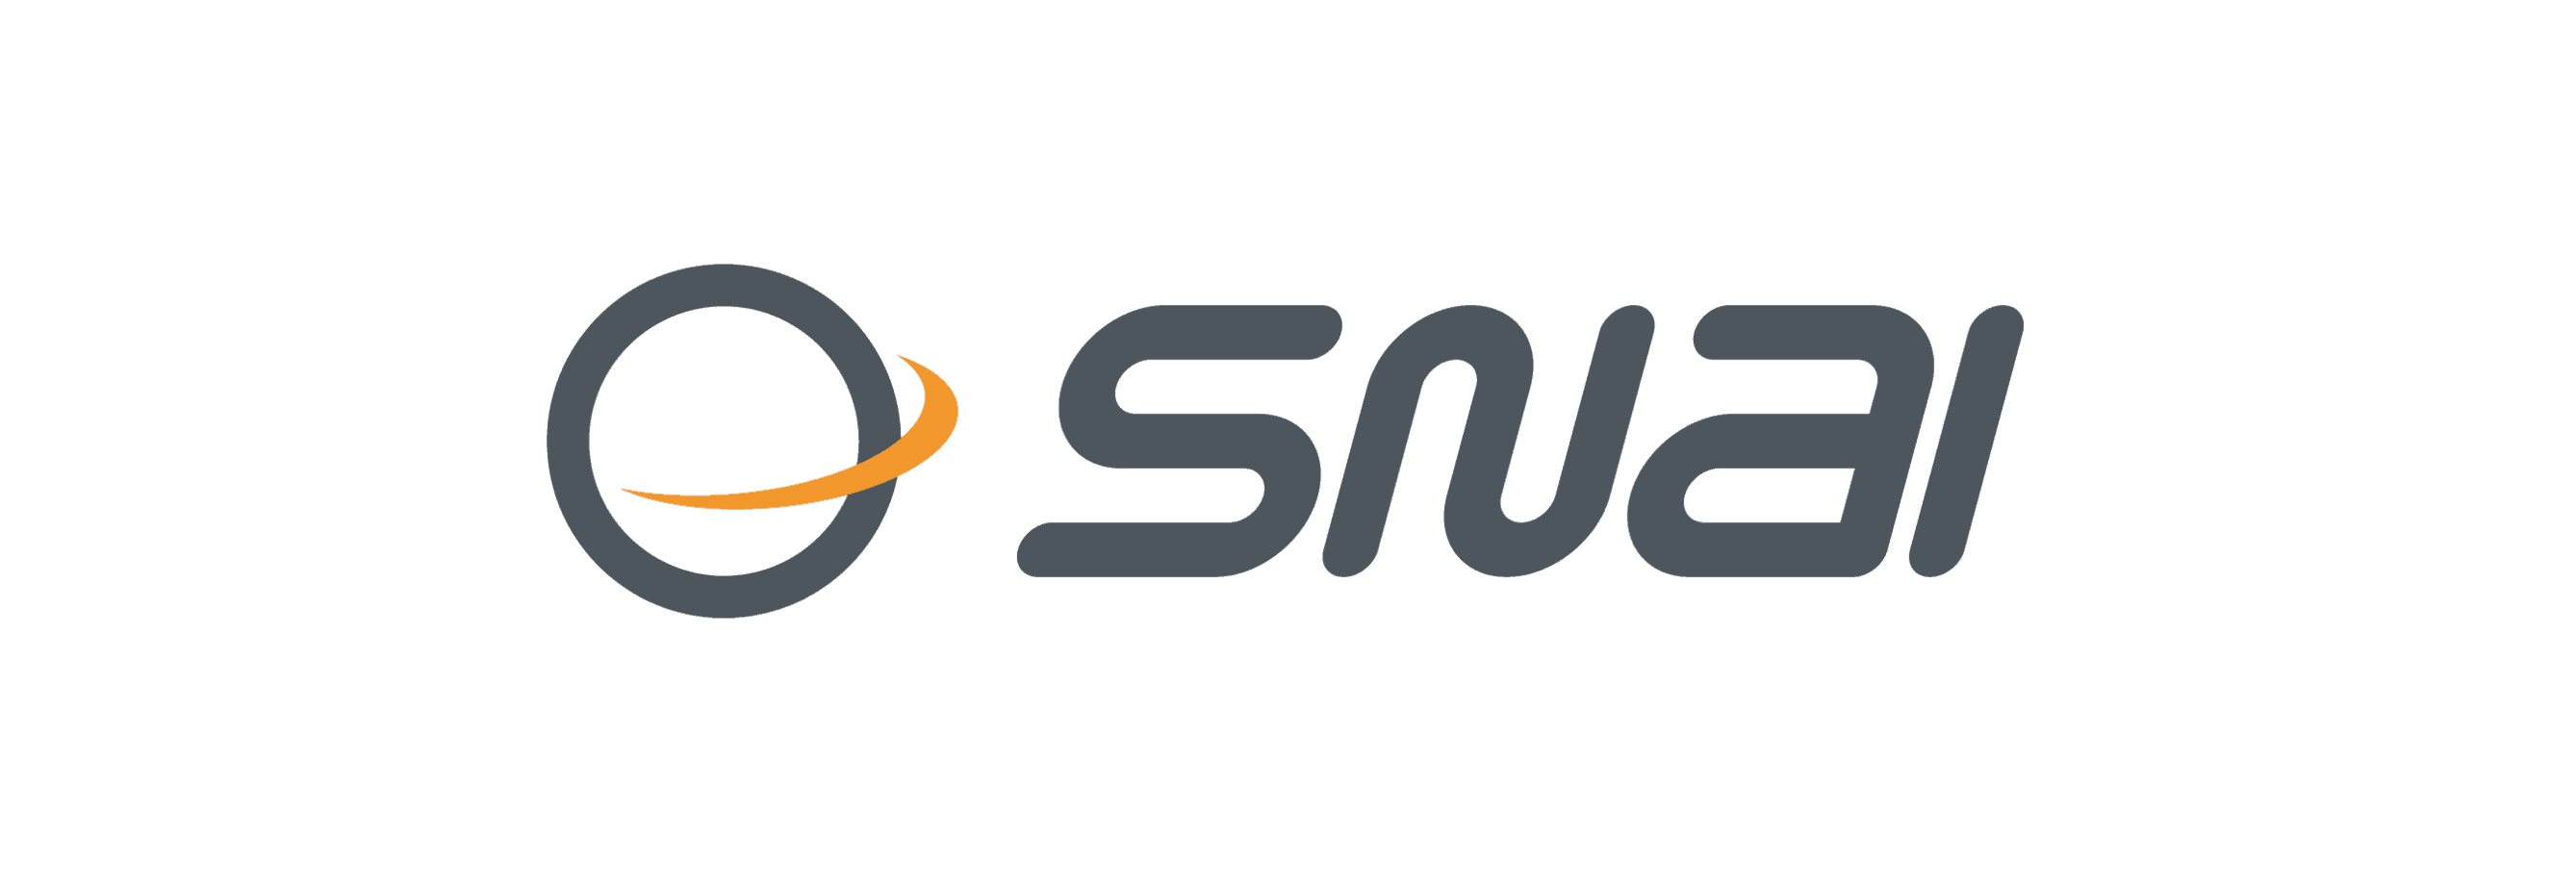 Snai, Snai leader a livello internazionale: il sito giusto per scommettere online